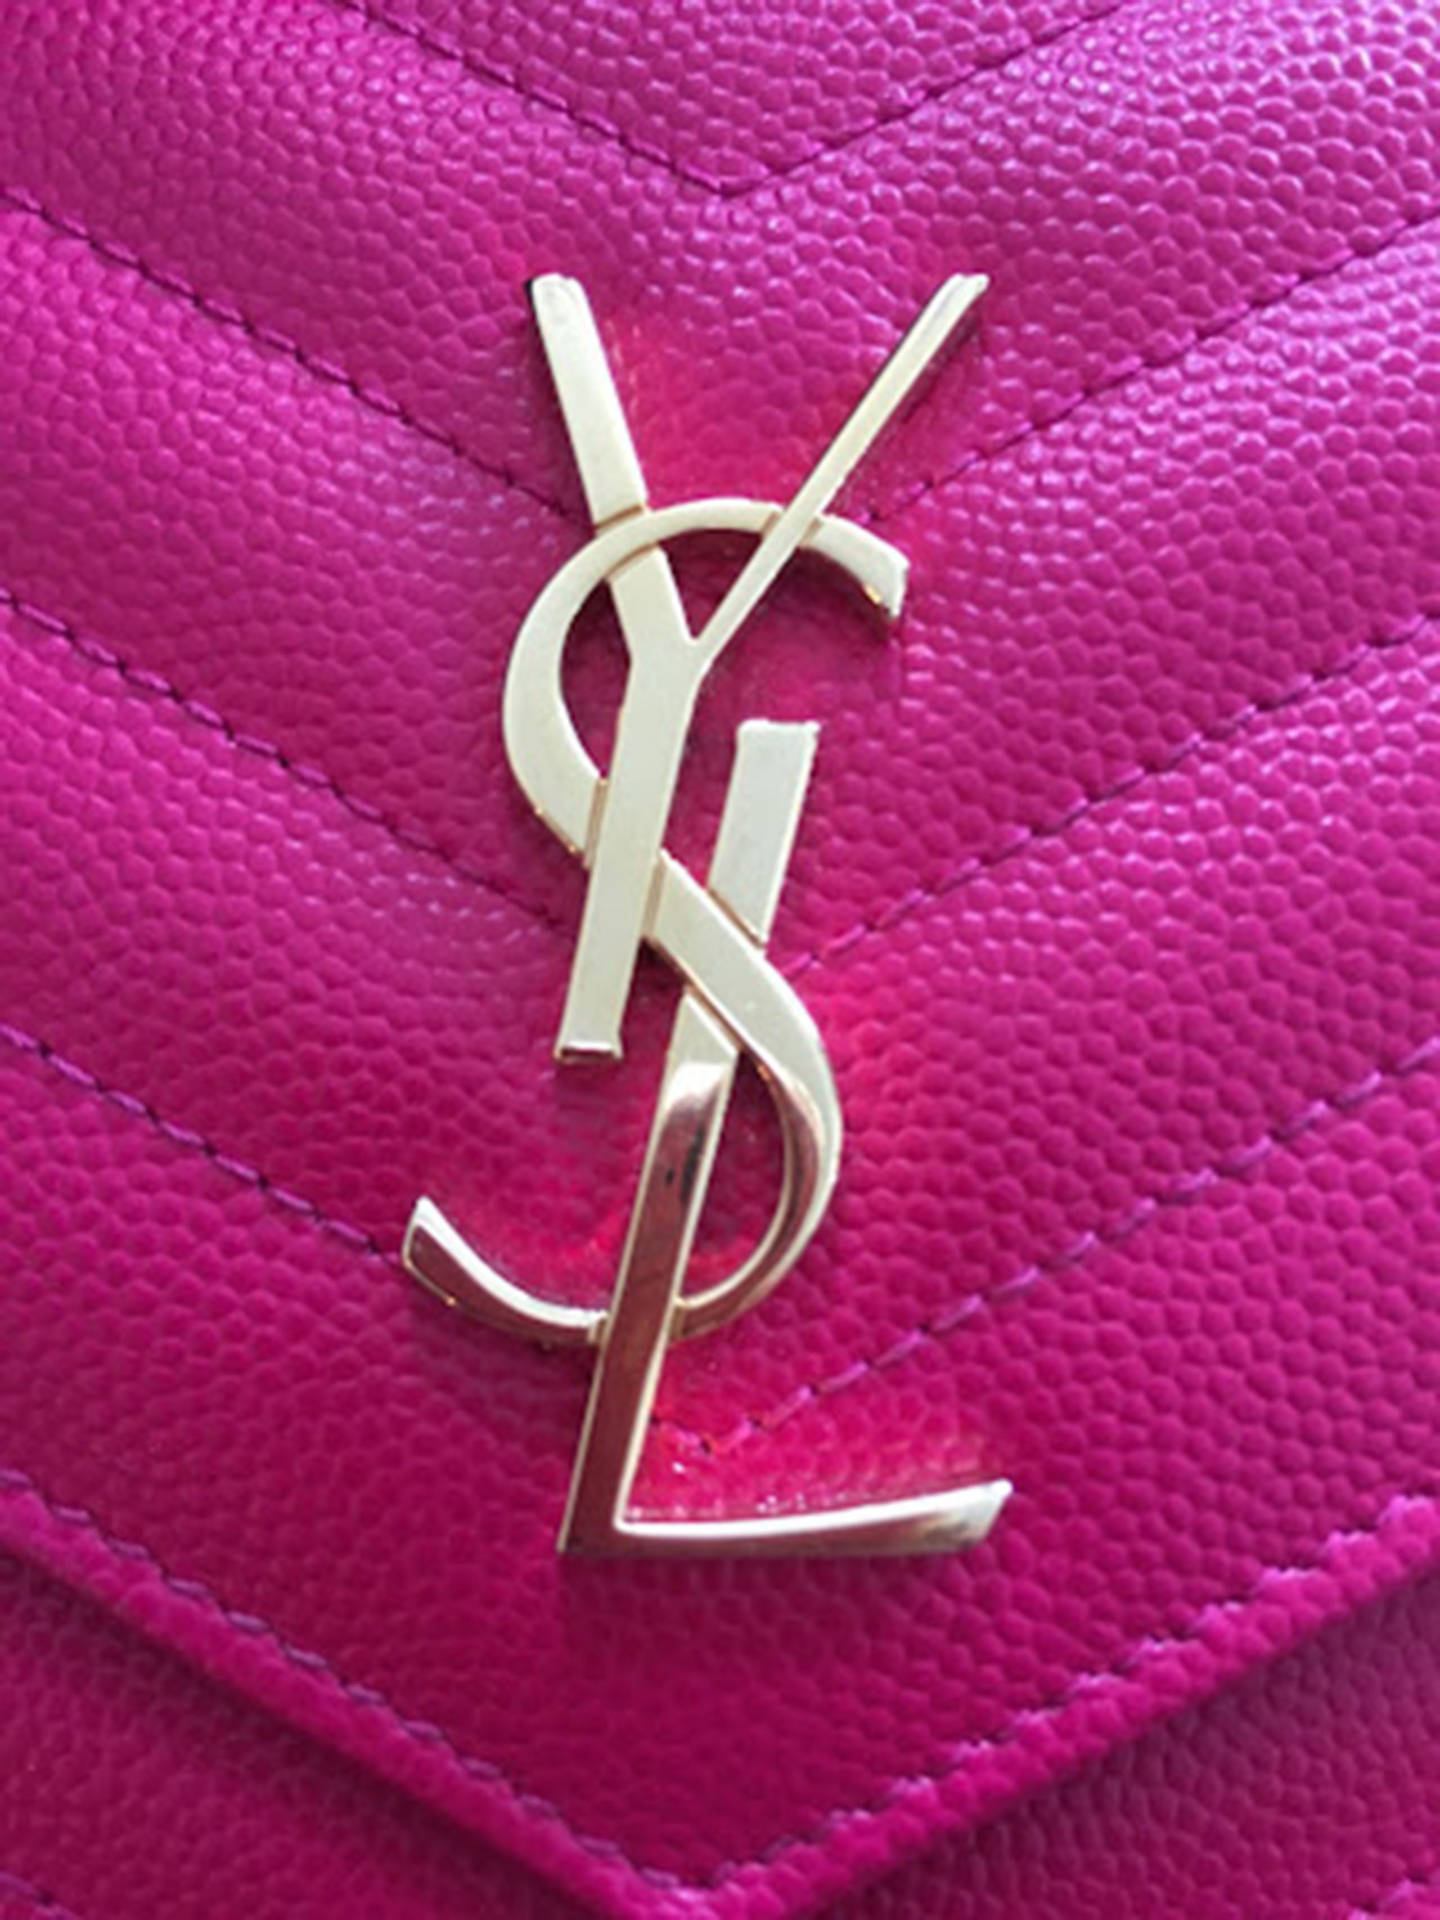 Logotipode Ysl En Bolso Rosa. Fondo de pantalla